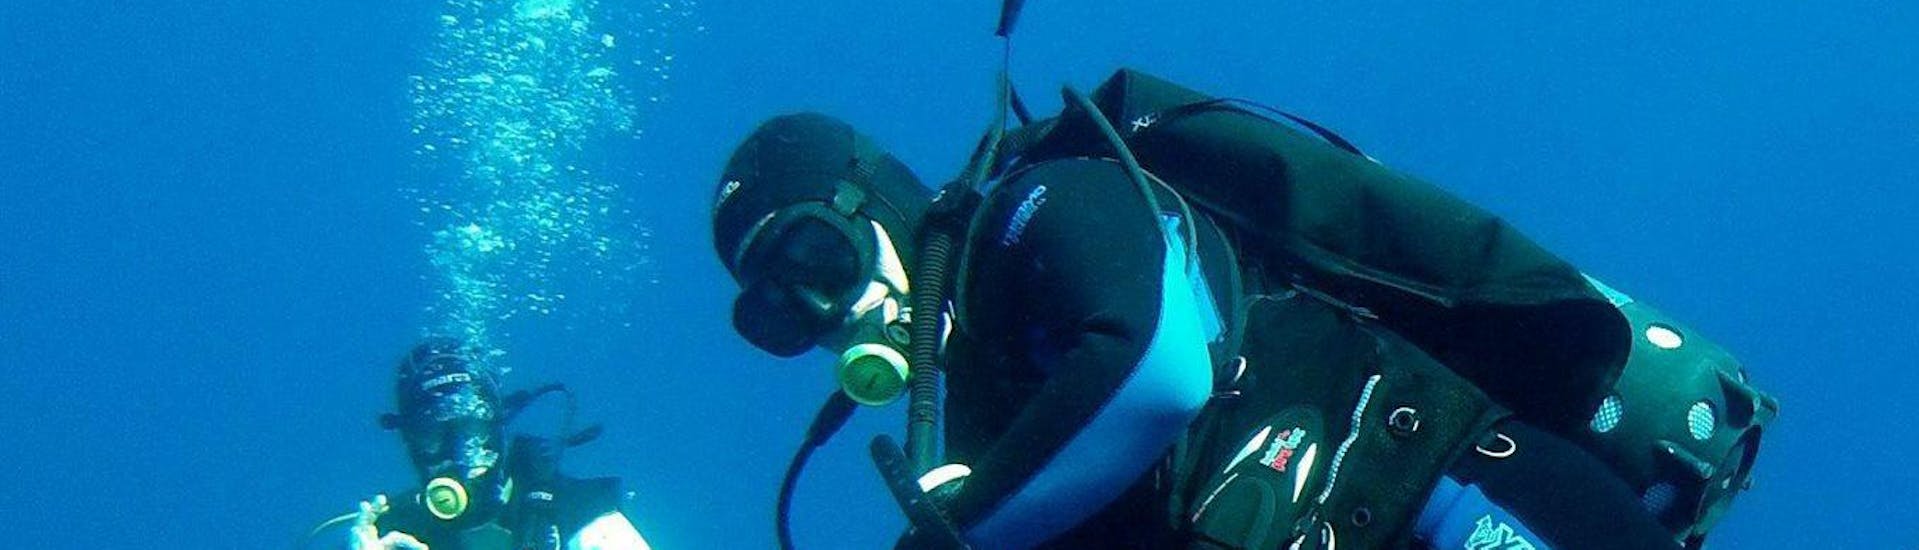 Curso PADI Open Water Diver en Marsalforn para principiantes.